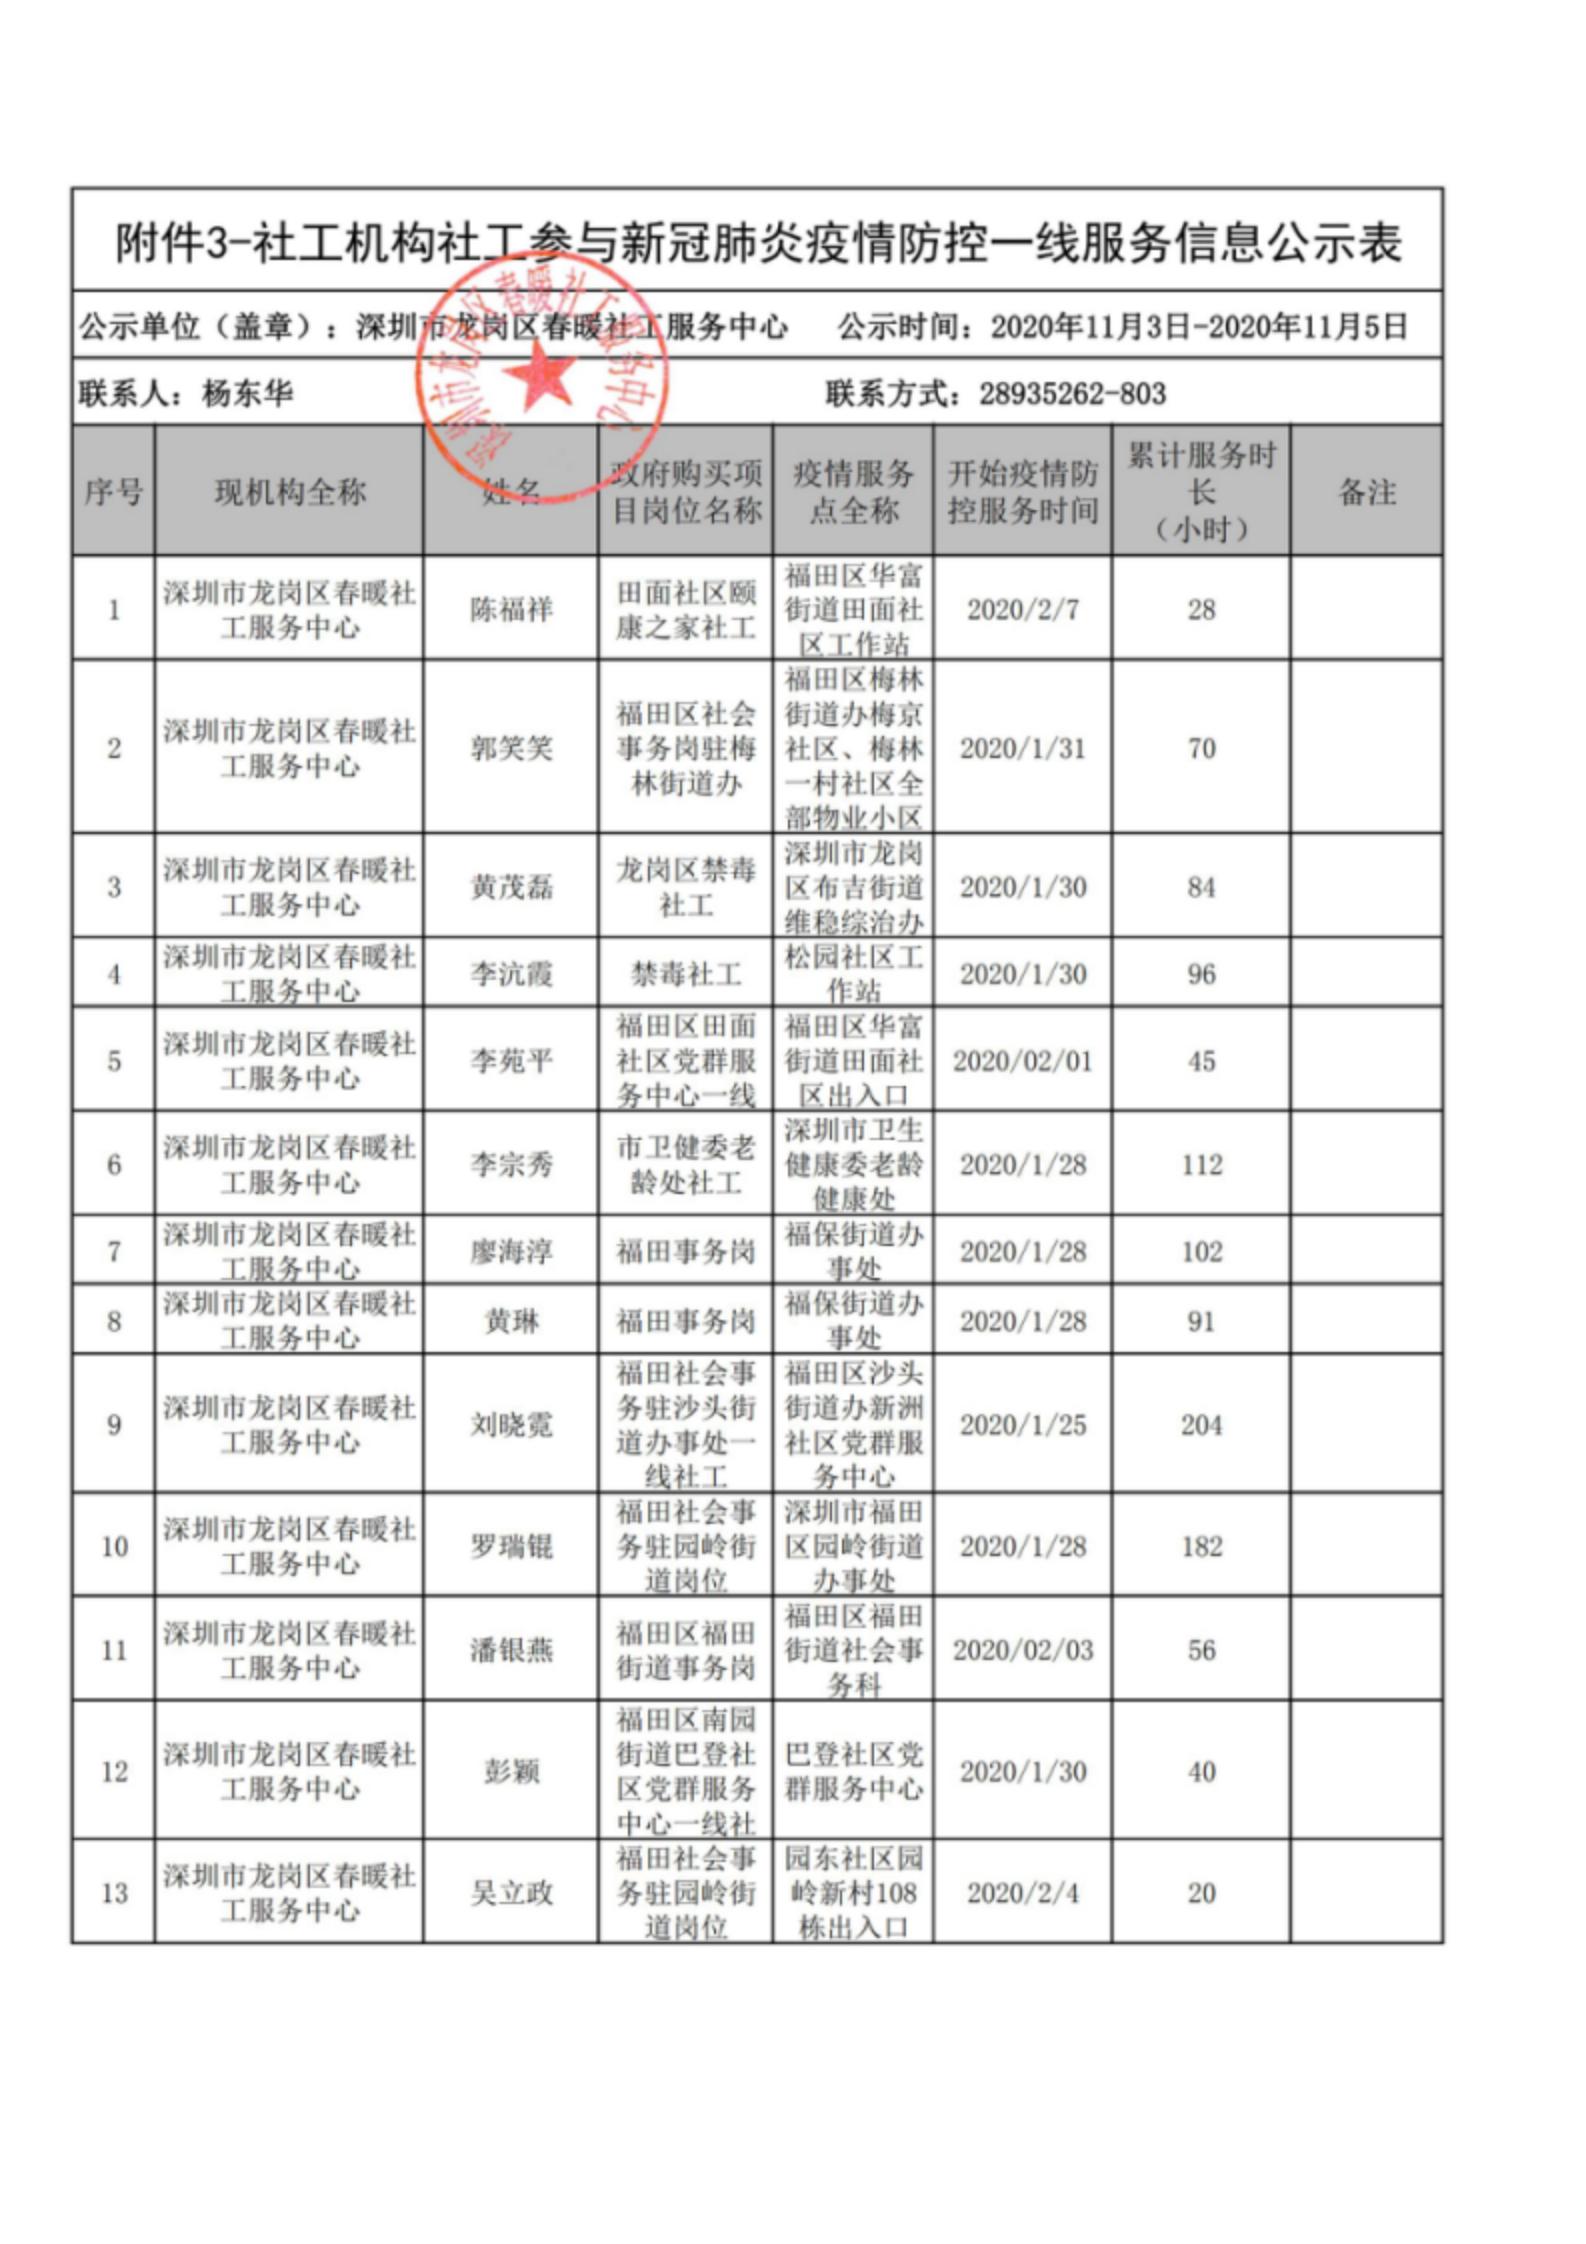 深圳市社工参与新冠肺炎疫情防控一线服务个人信息公示（第二批）-春暖社工